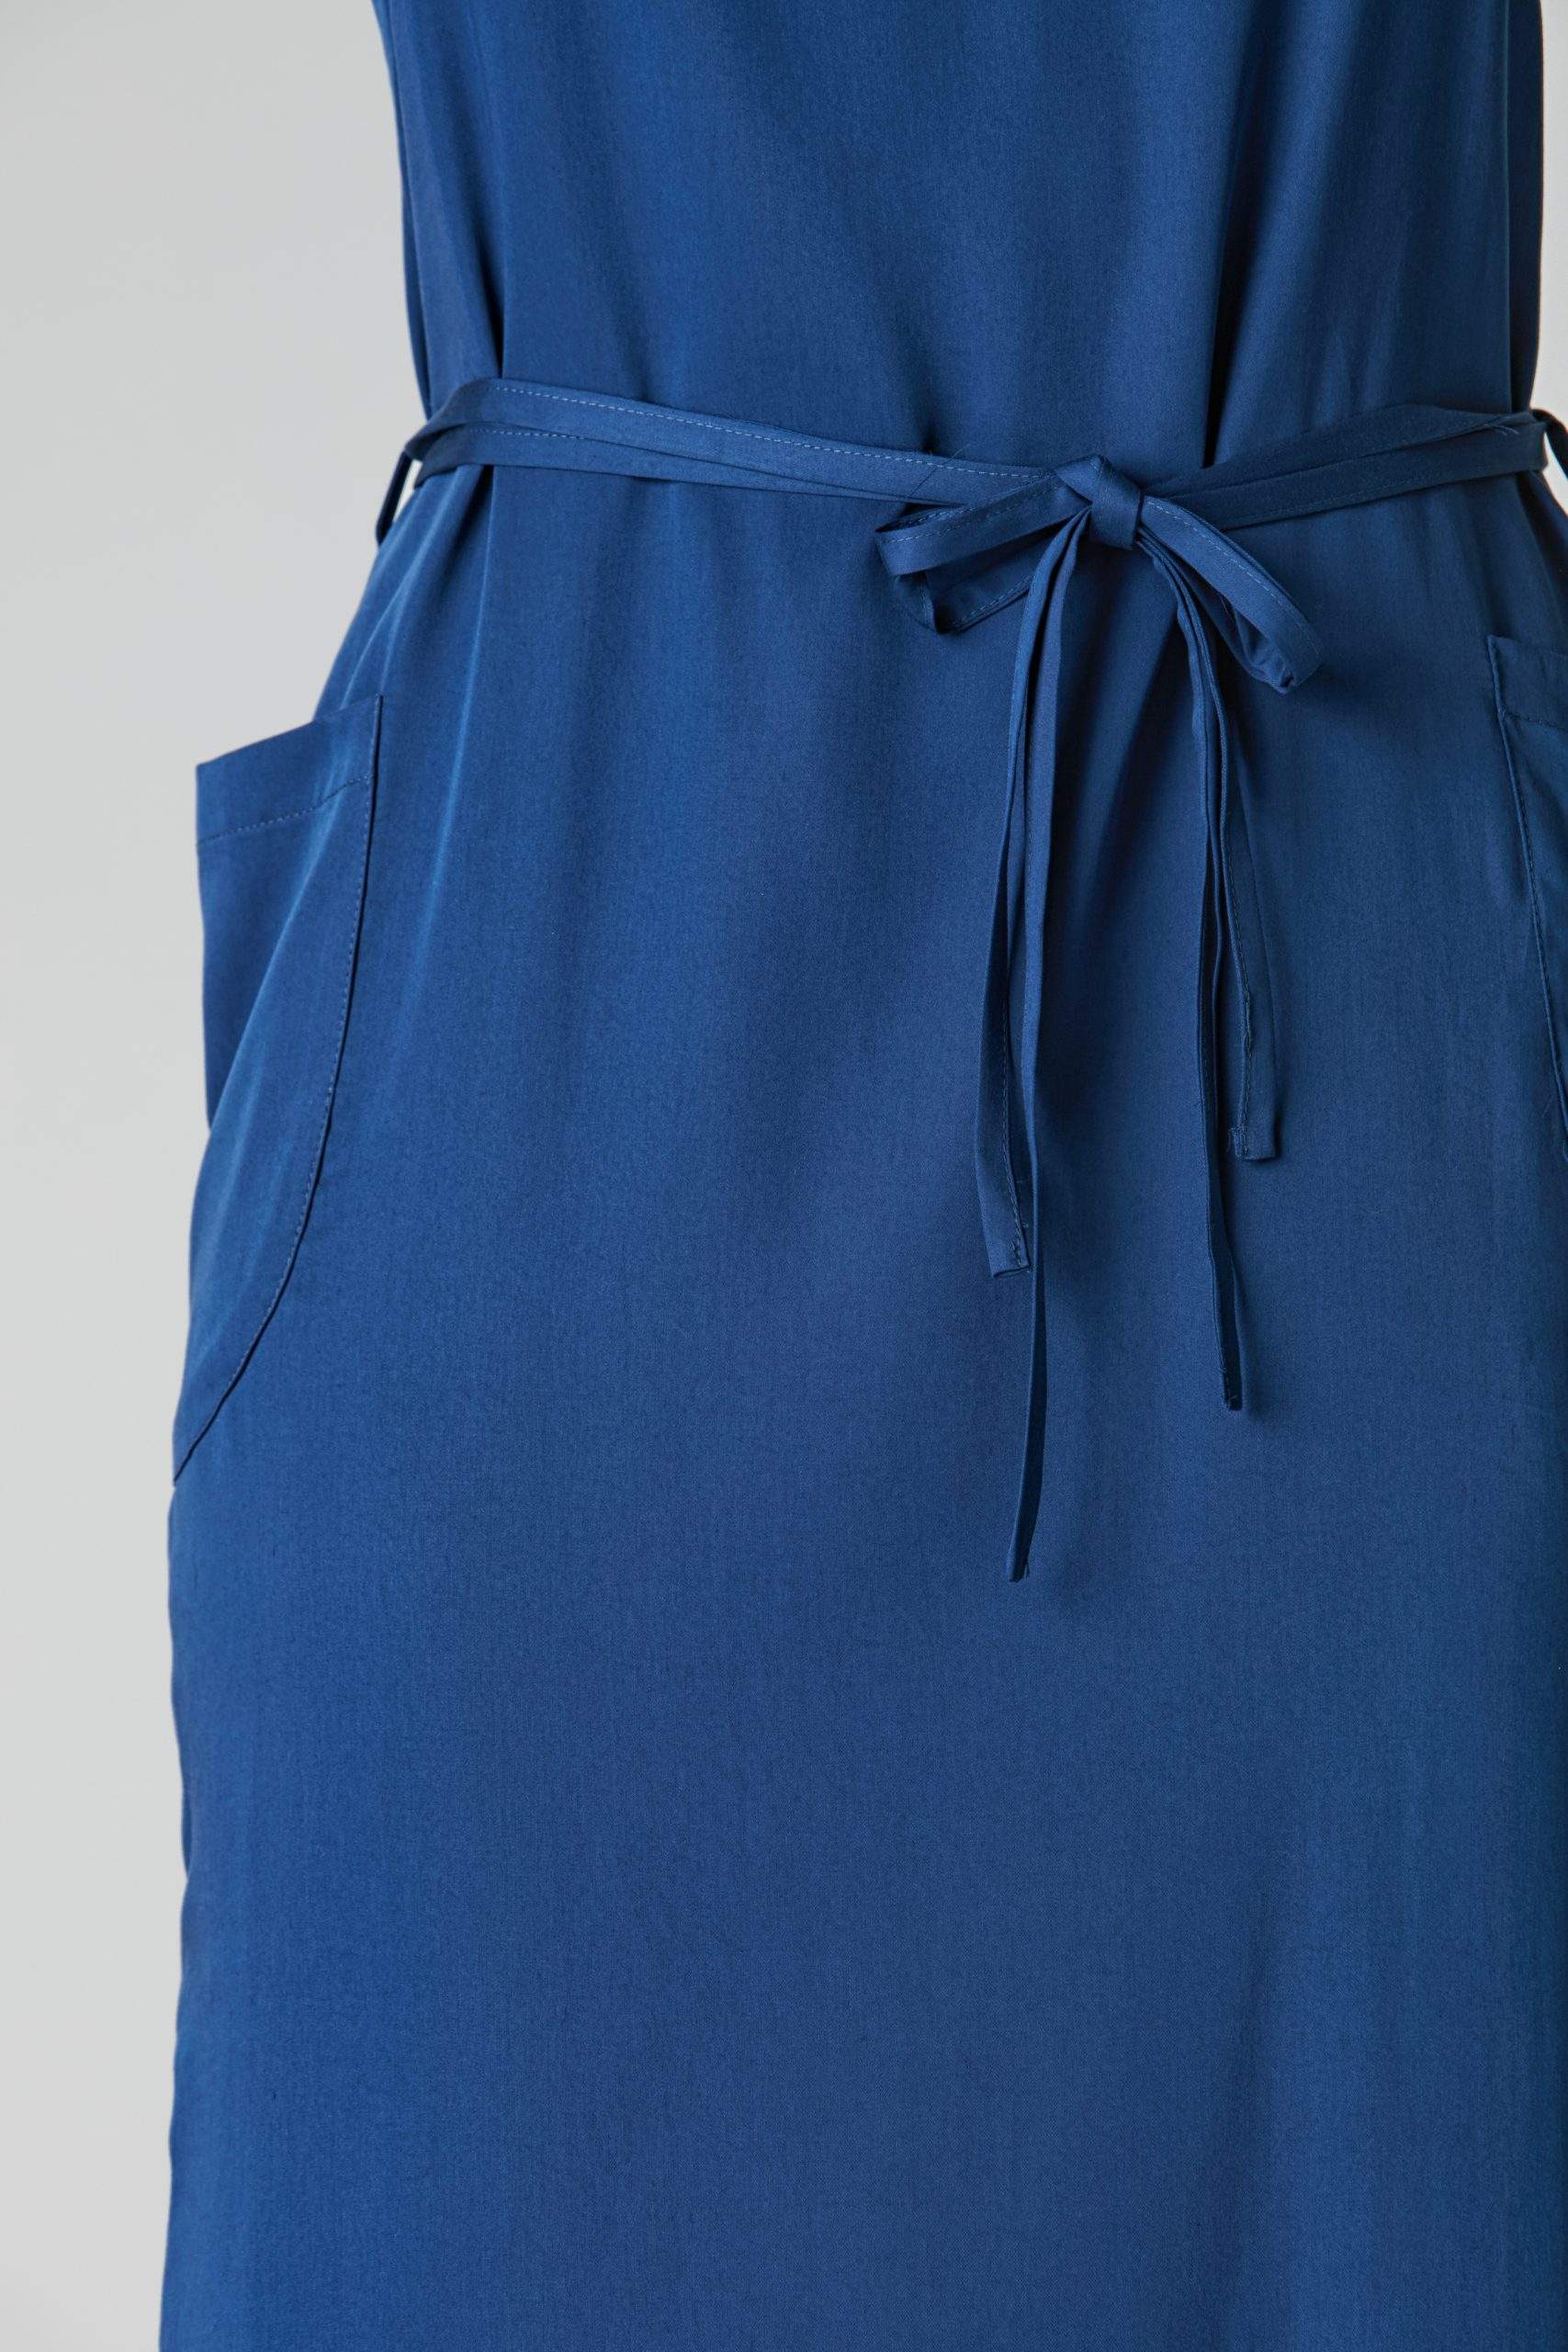 Midi dress “TI-NAA” made of silky Tencel